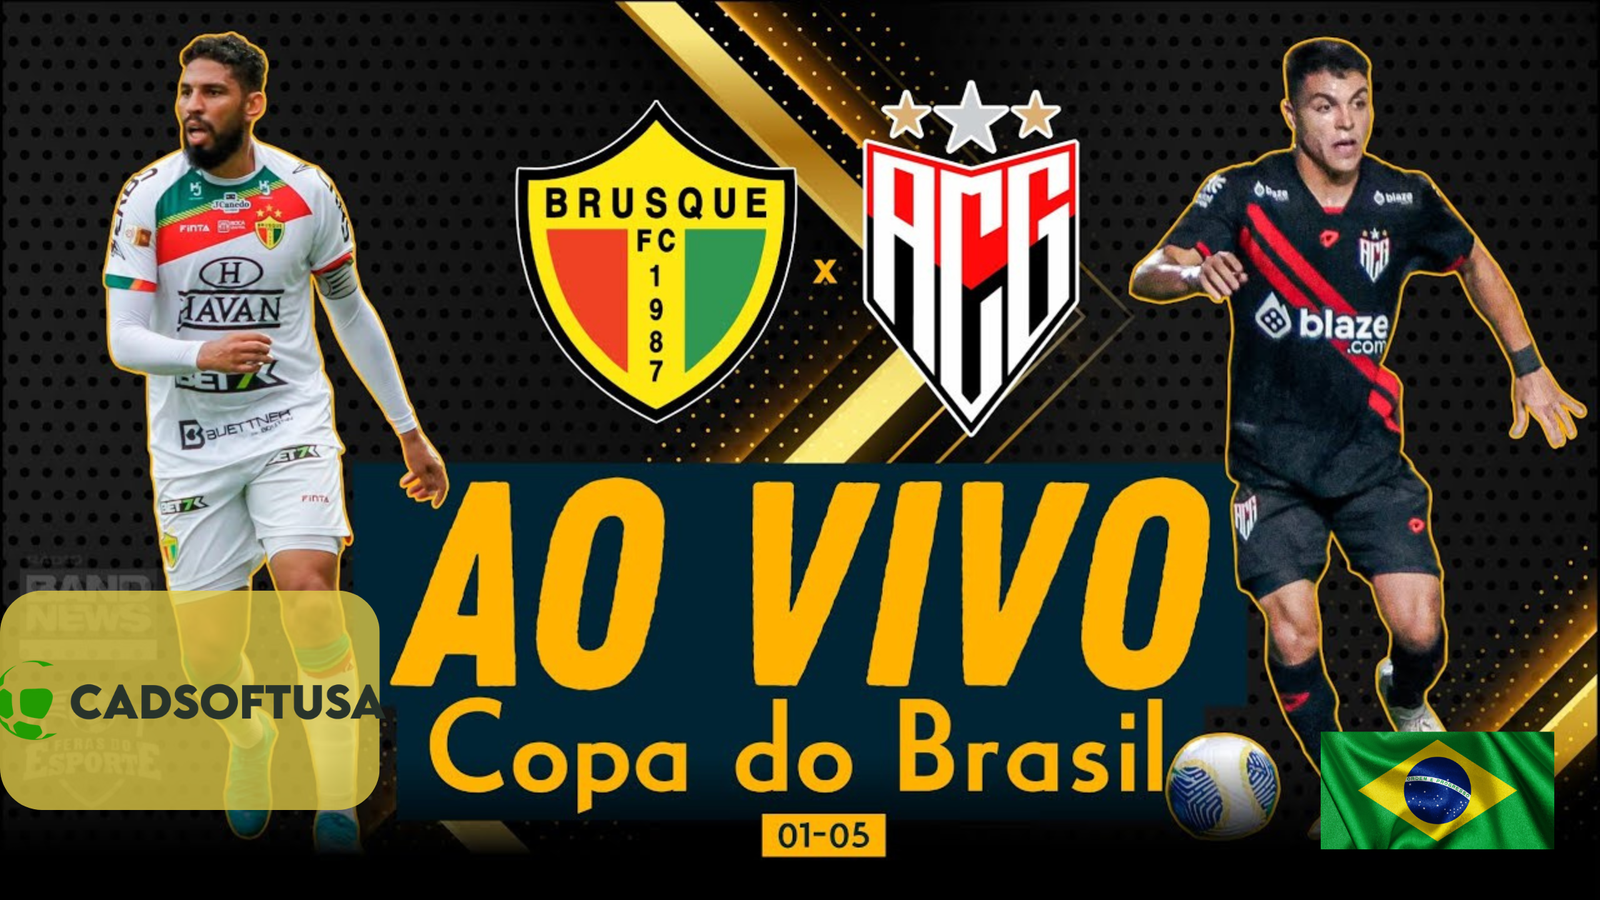 Brusque x Atlético-GO: Gigante Goiano Busca Vitória para Iniciar Caminhada na Copa do Brasil